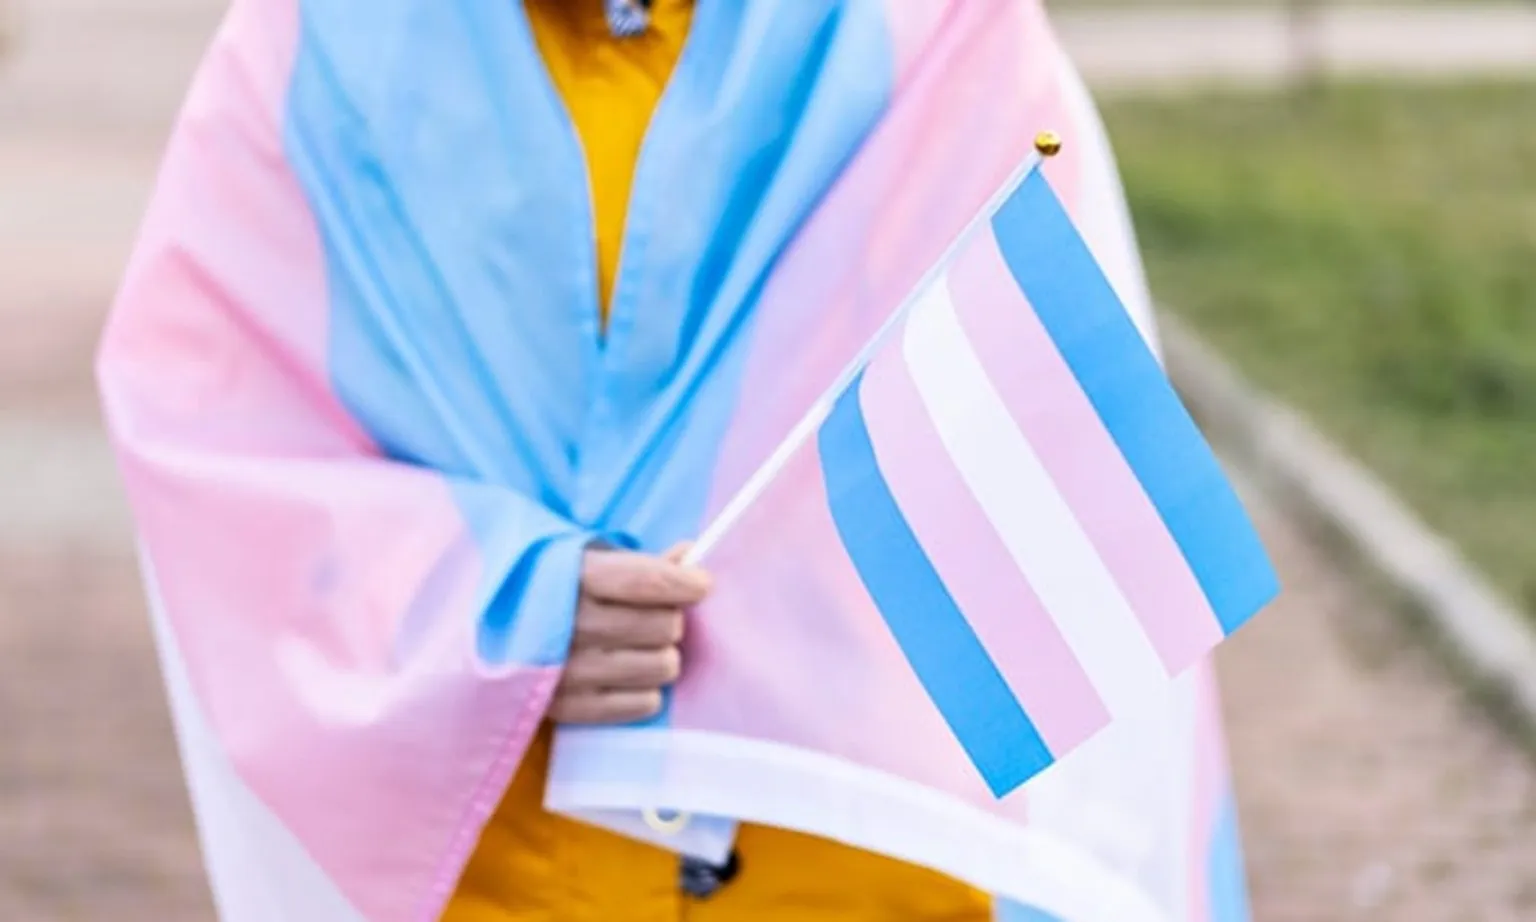 Thụy Điển thông qua luật hạ độ tuổi chuyển đổi giới tính hợp pháp từ 18 xuống 16